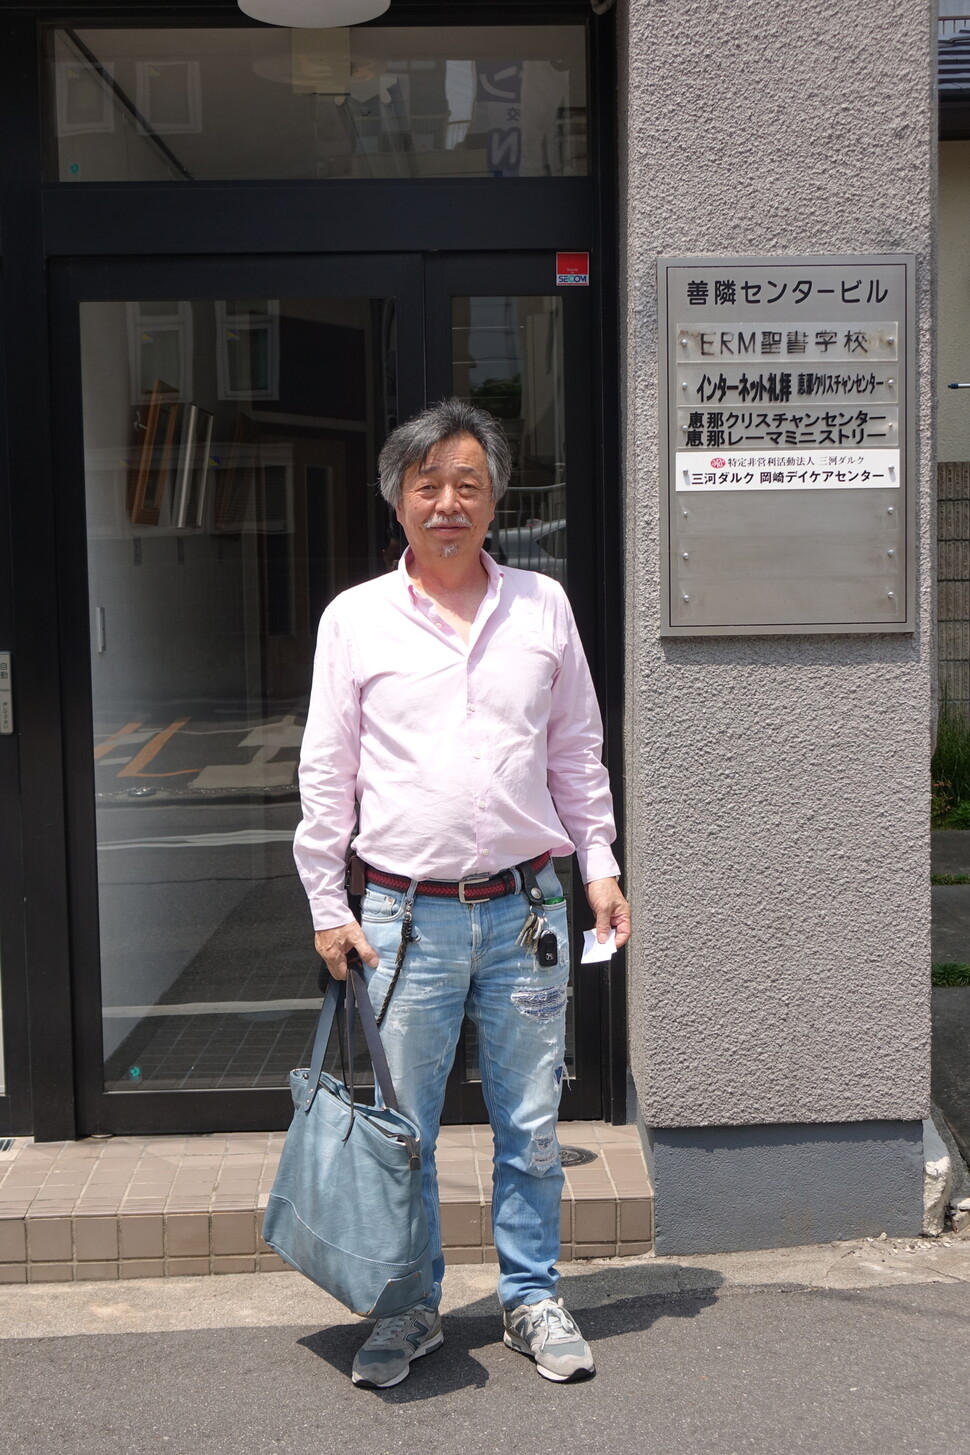 2023년 5월22일 일본 아이치현 오카자키시 미카와 다르크 사무실 앞에서 포즈를 취한 마쓰우라 요시아키 센터장. 김양진 기자